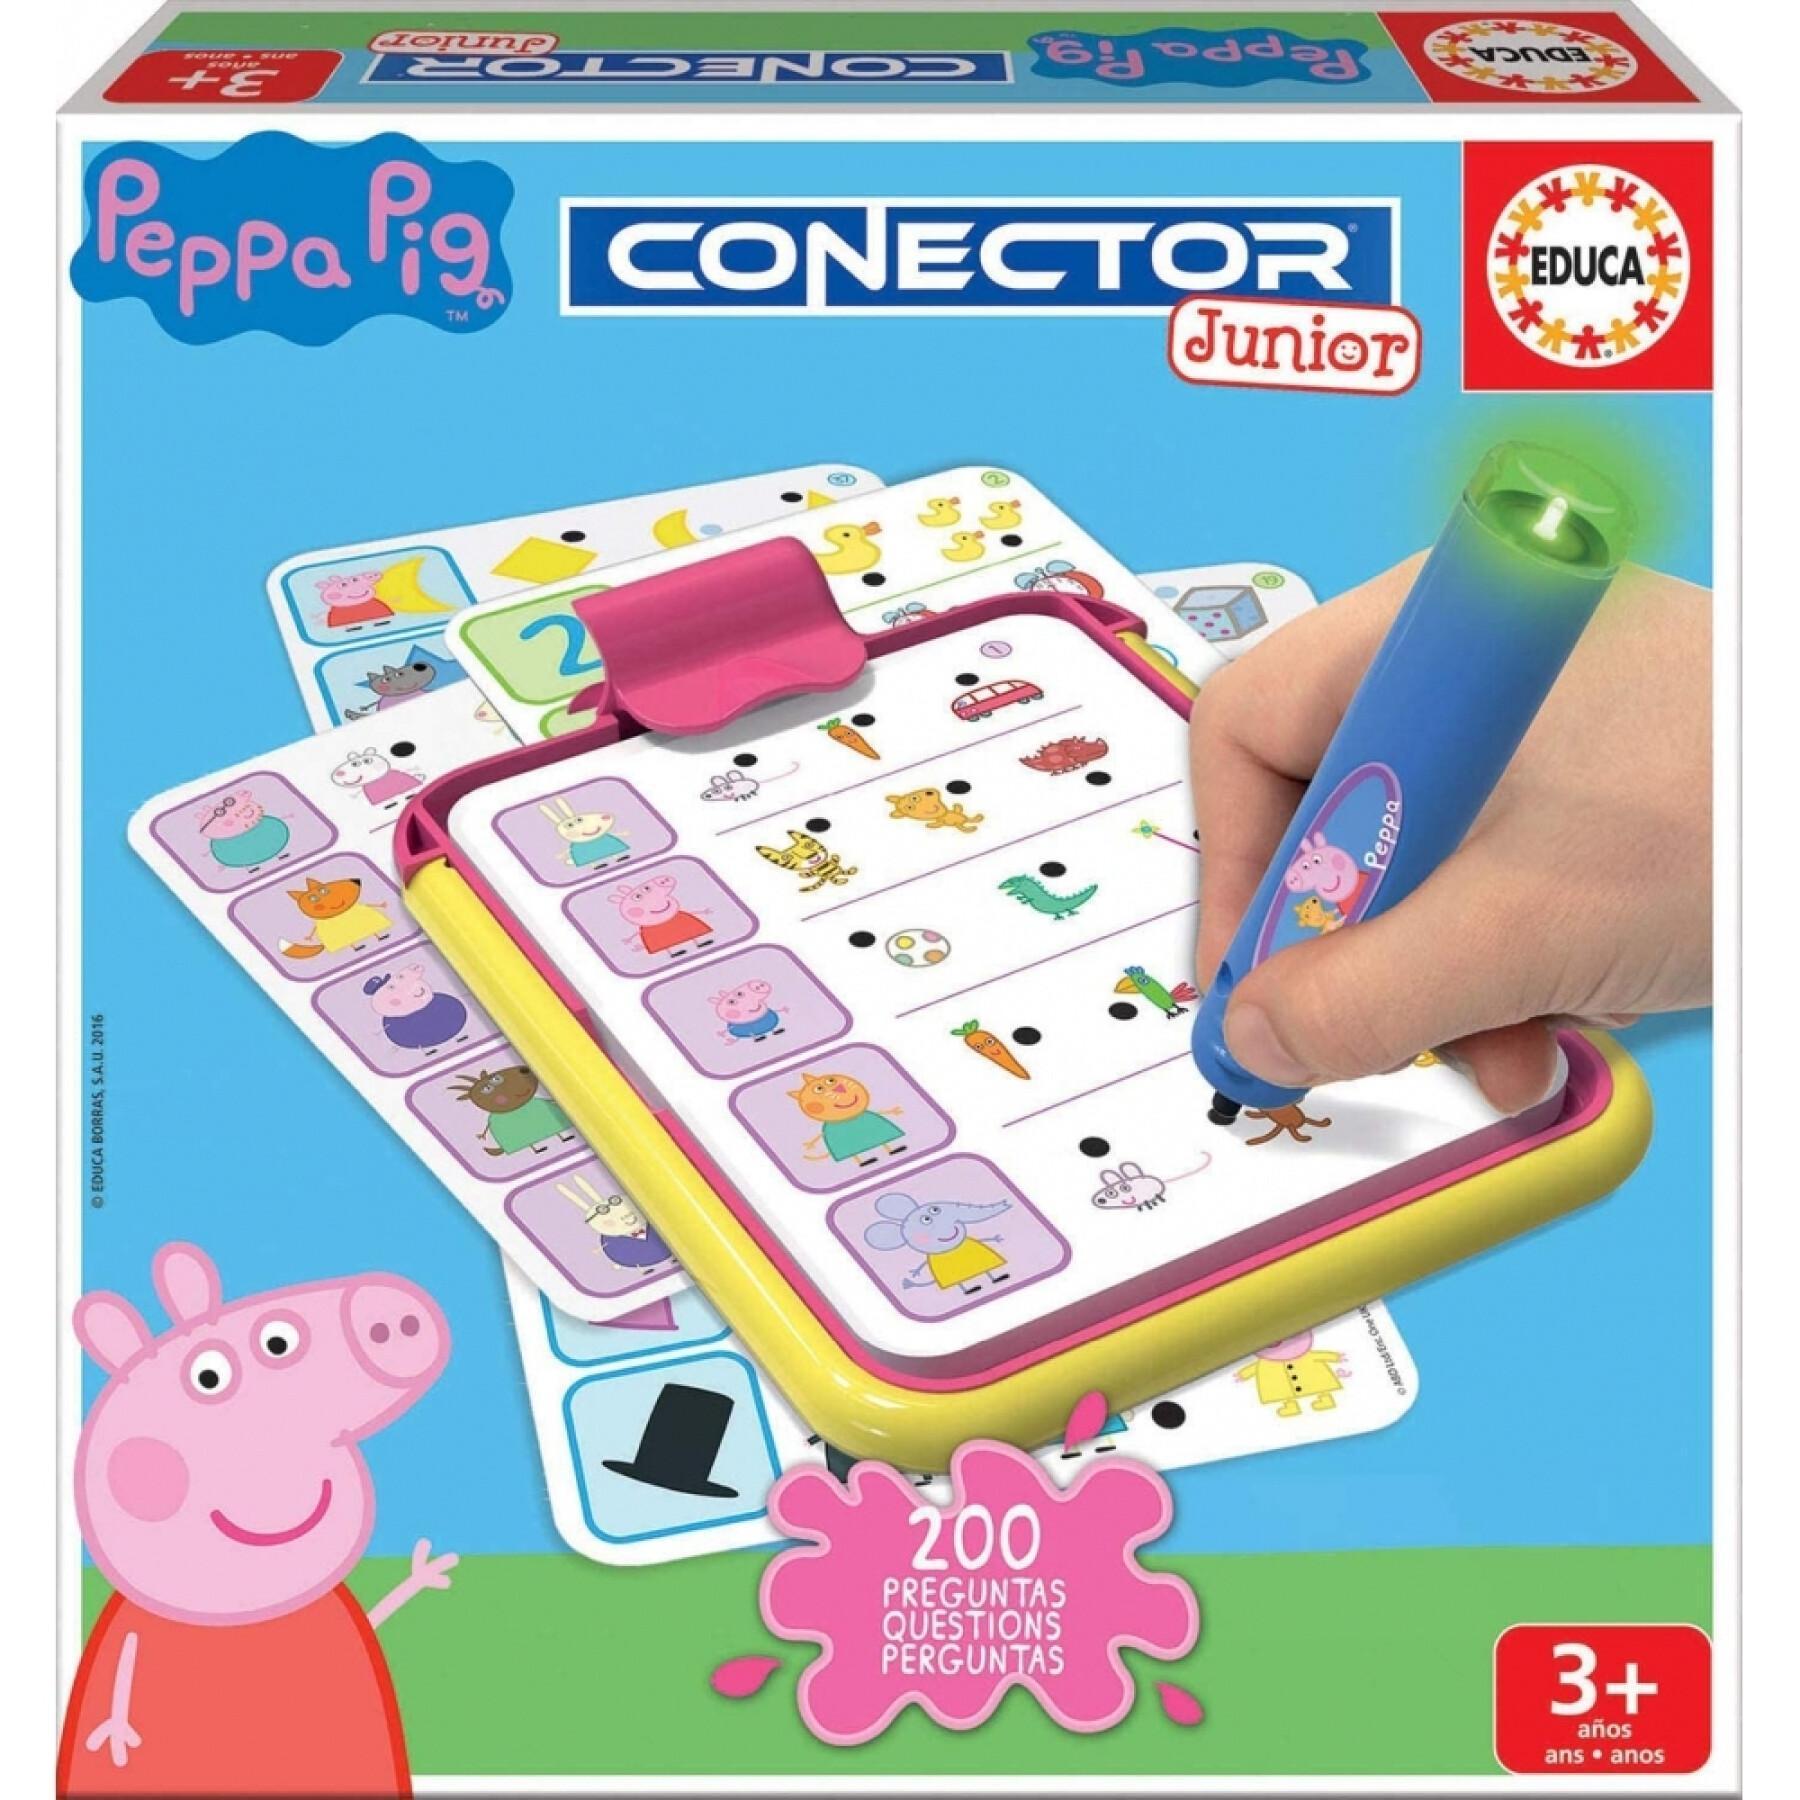 Giochi educativi di domande e risposte Peppa Pig Connector